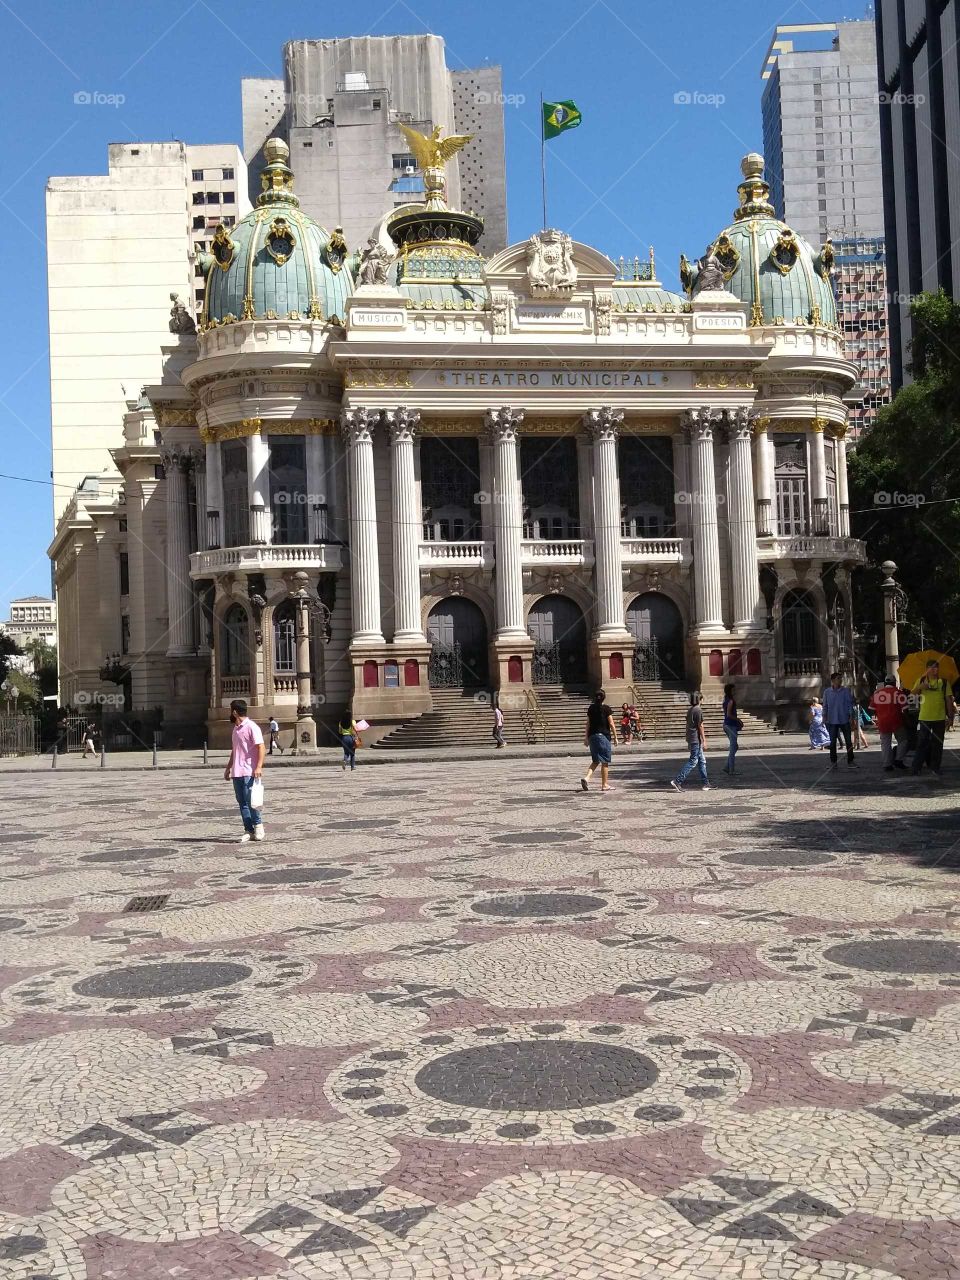 Teatro Municipal do Rio de janeiro.